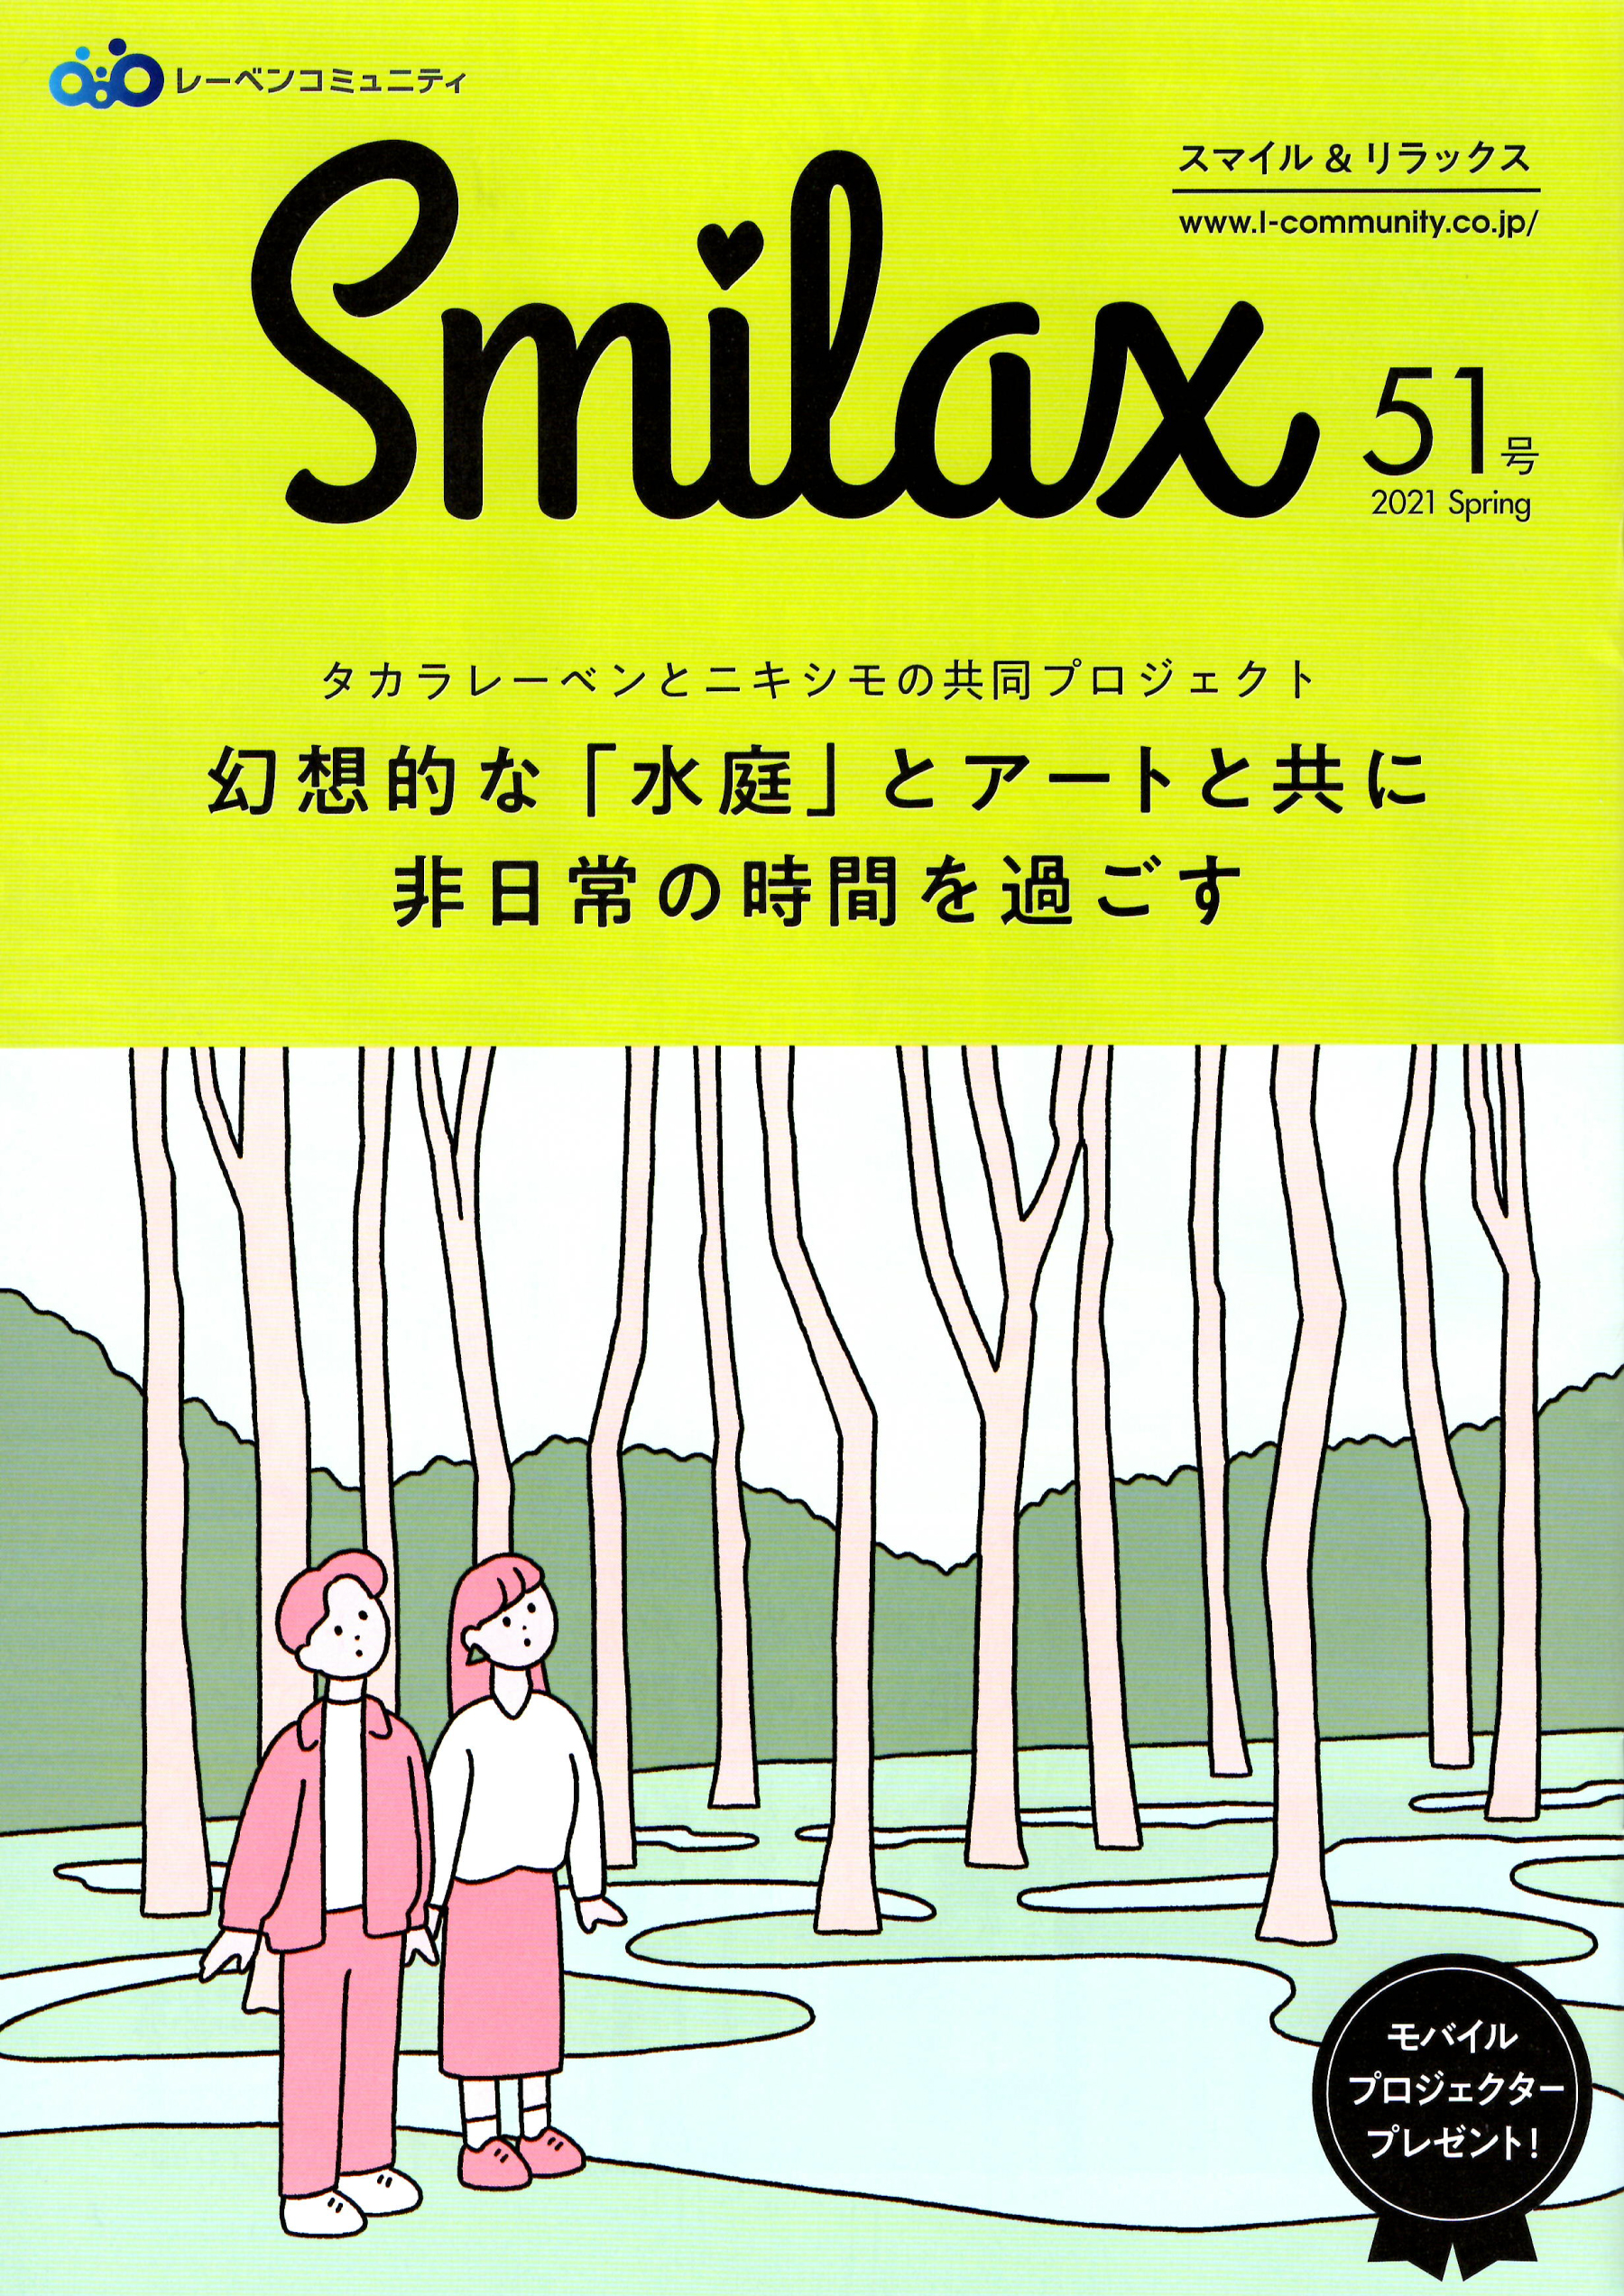 “smilax-1”